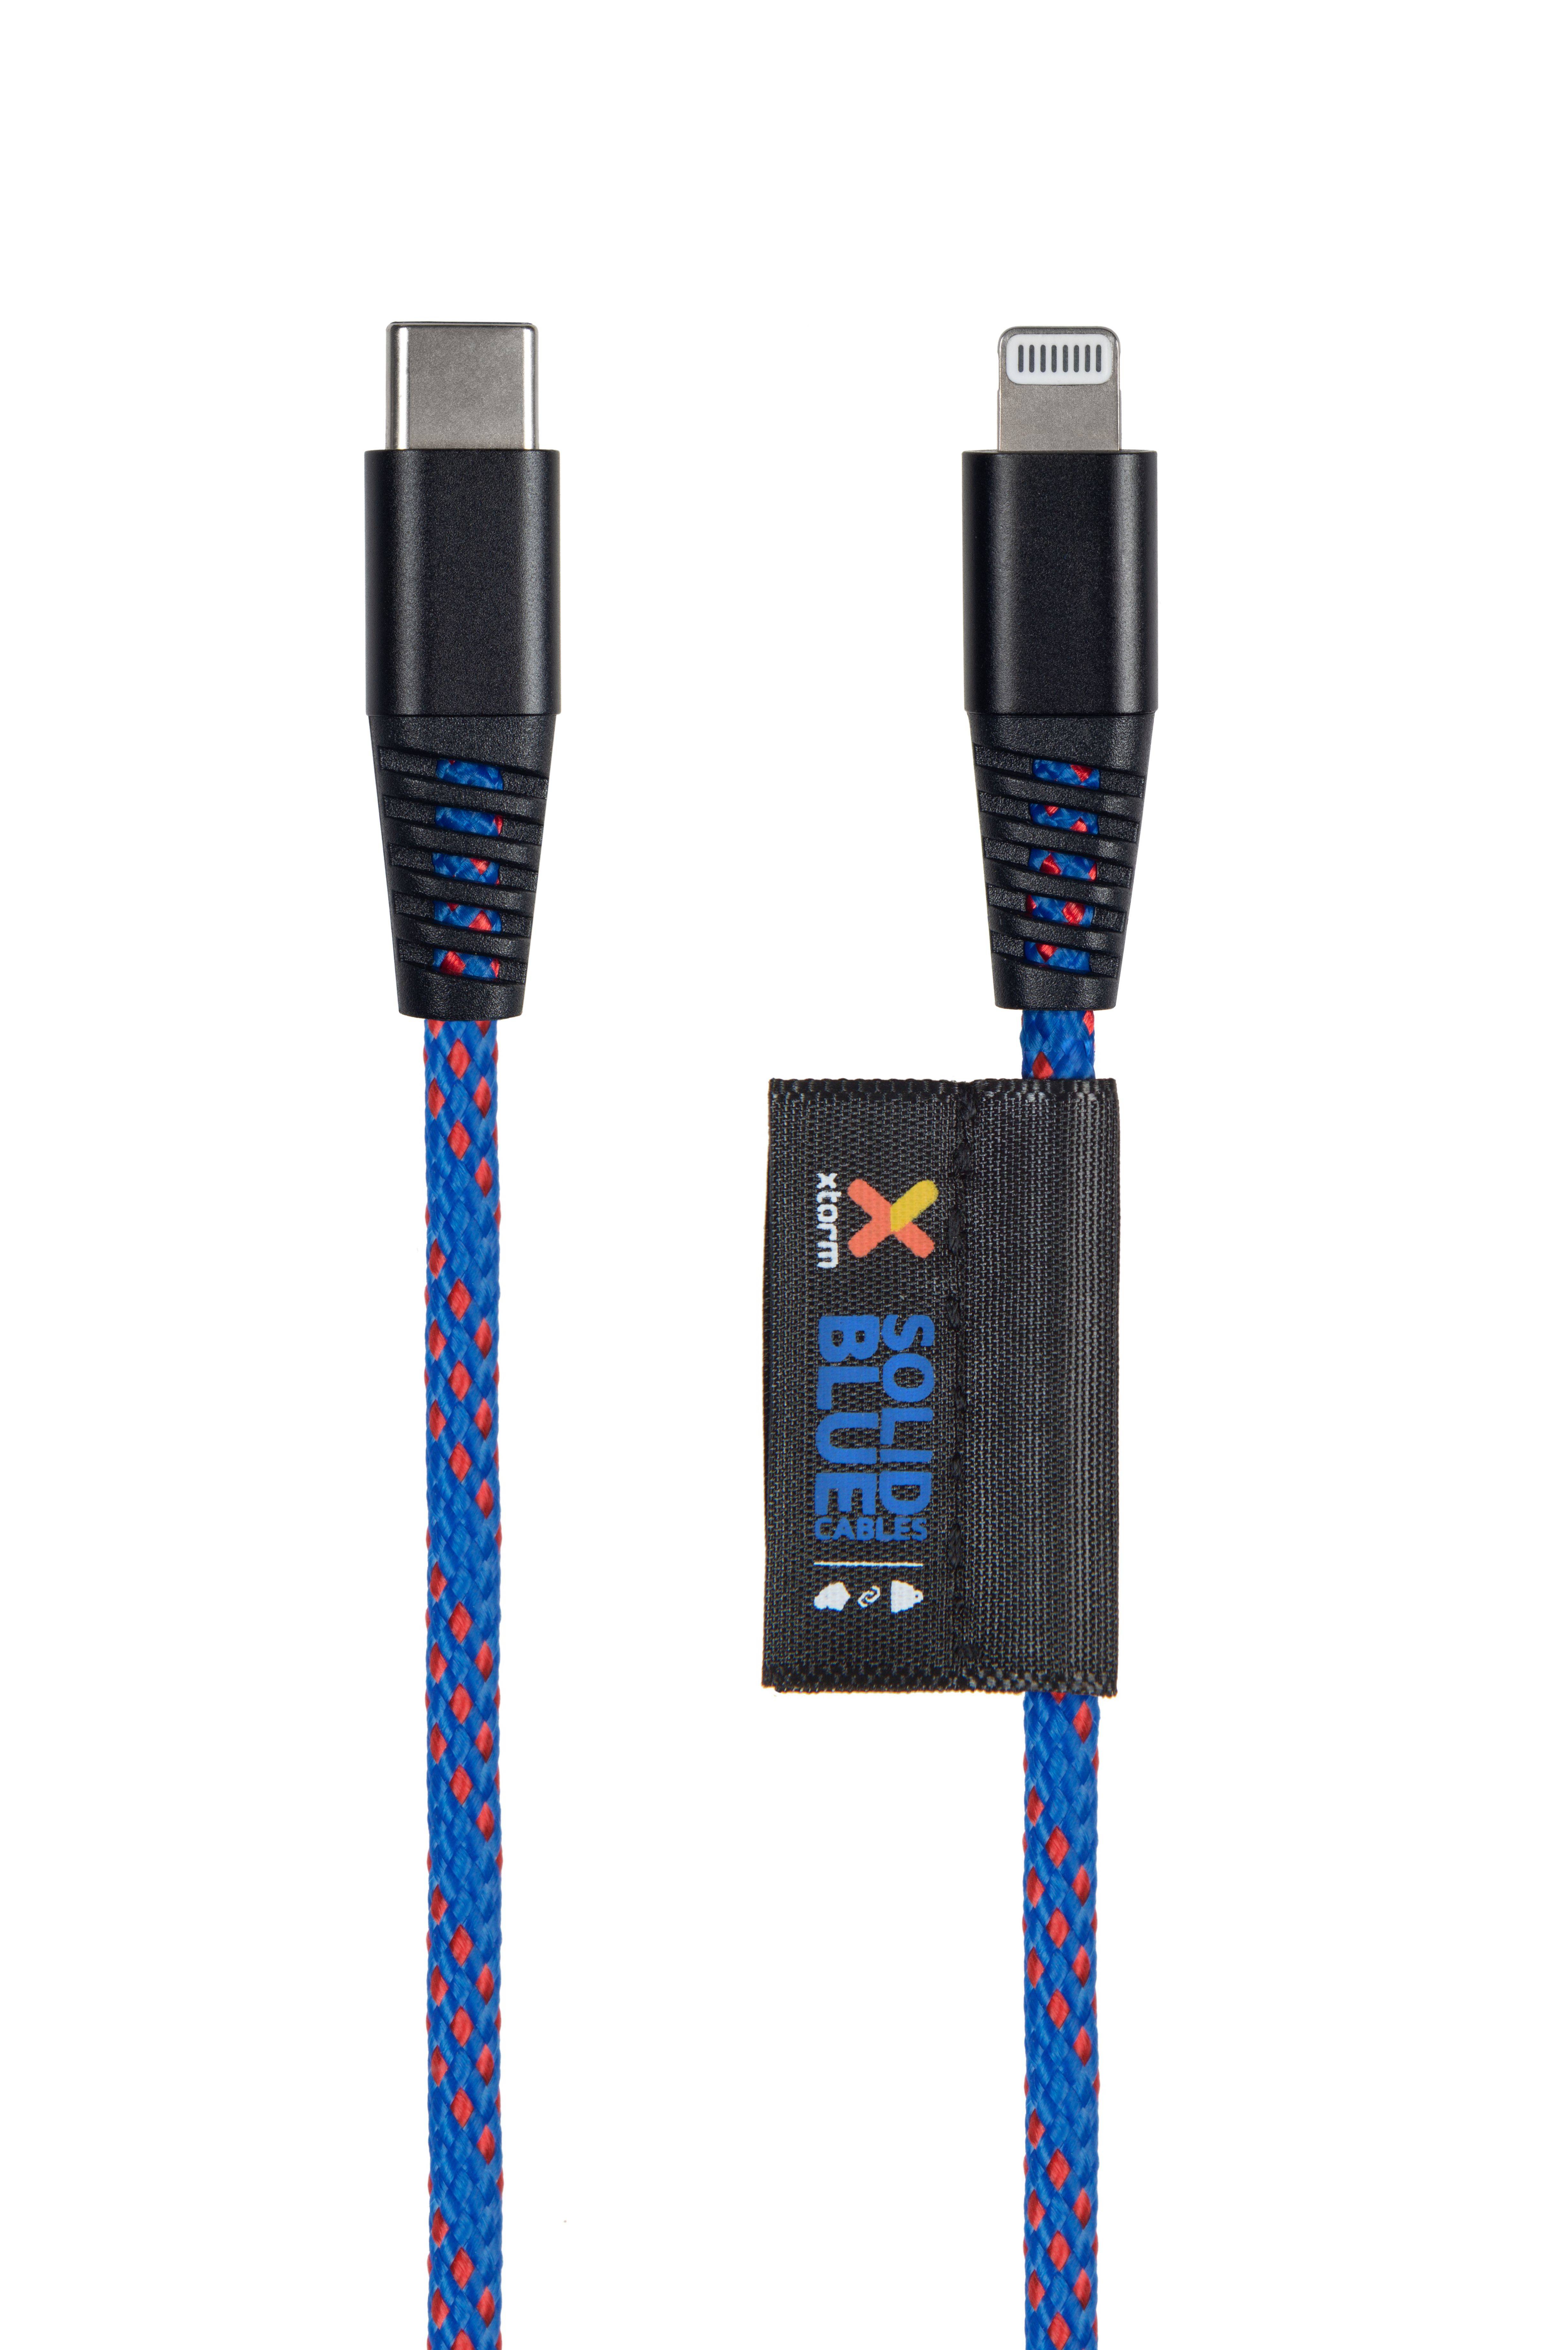 Rca Informatique - Image du produit : SOLID BLUE USB-C - LIGHTNING CABLE (2M)